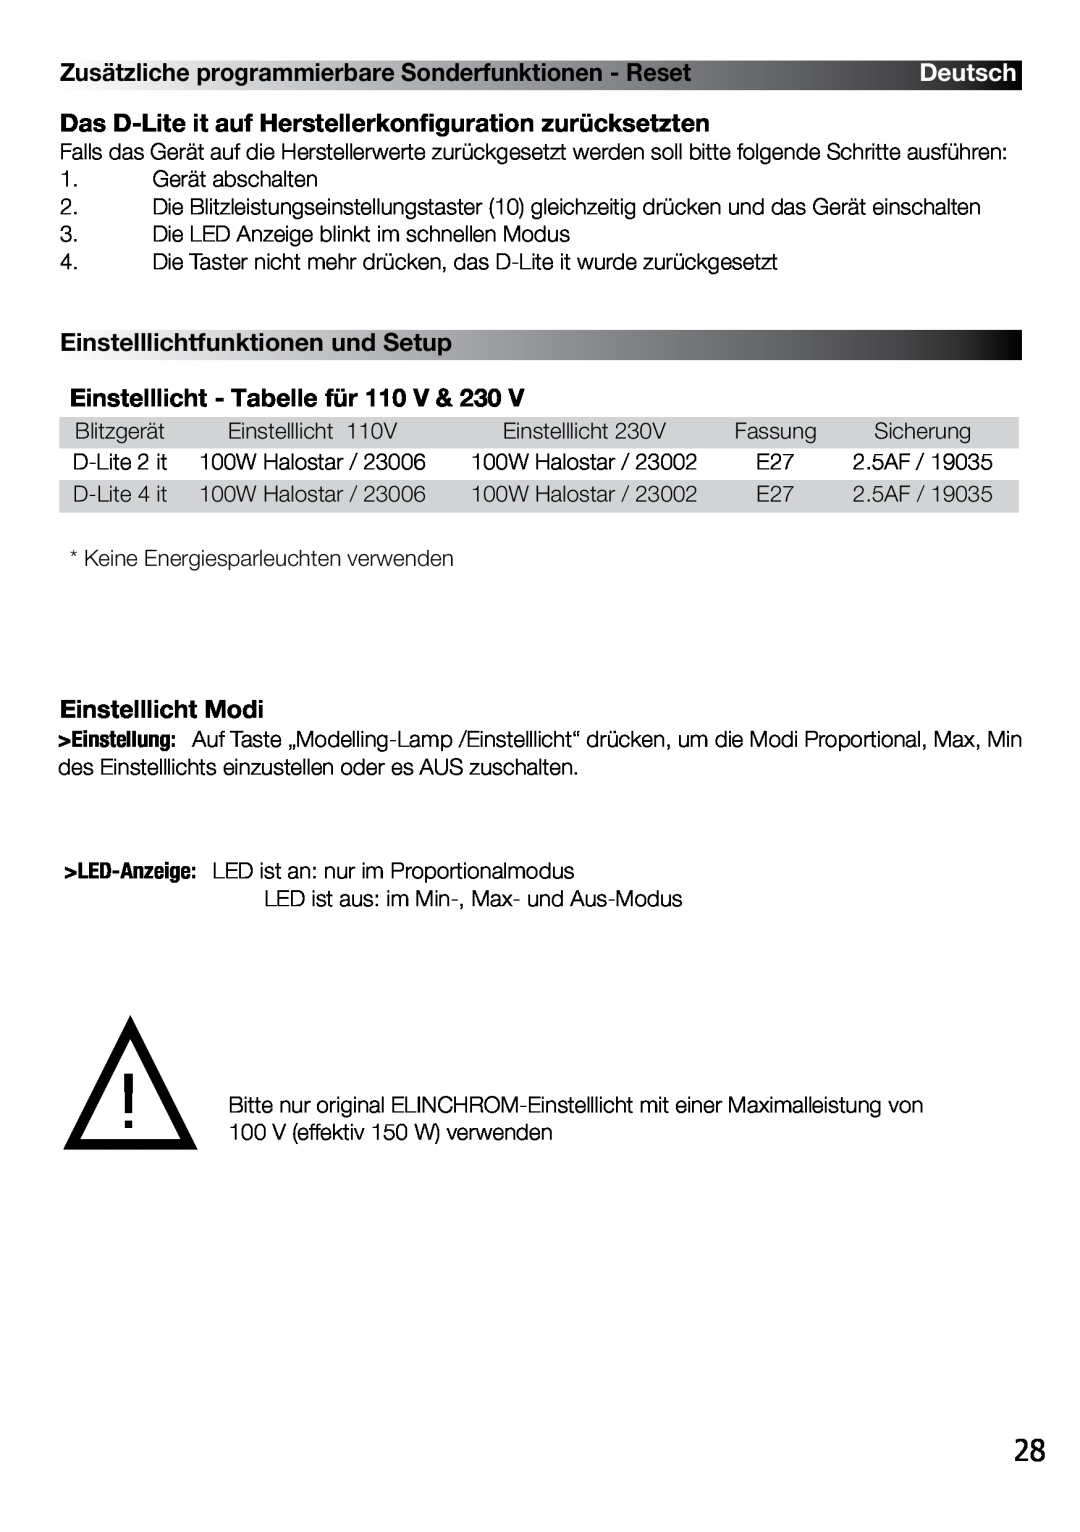 Elinchrom 4 IT Einstelllichtfunktionen und Setup, Einstelllicht - Tabelle für 110 V & 230, Einstelllicht Modi, Deutsch 